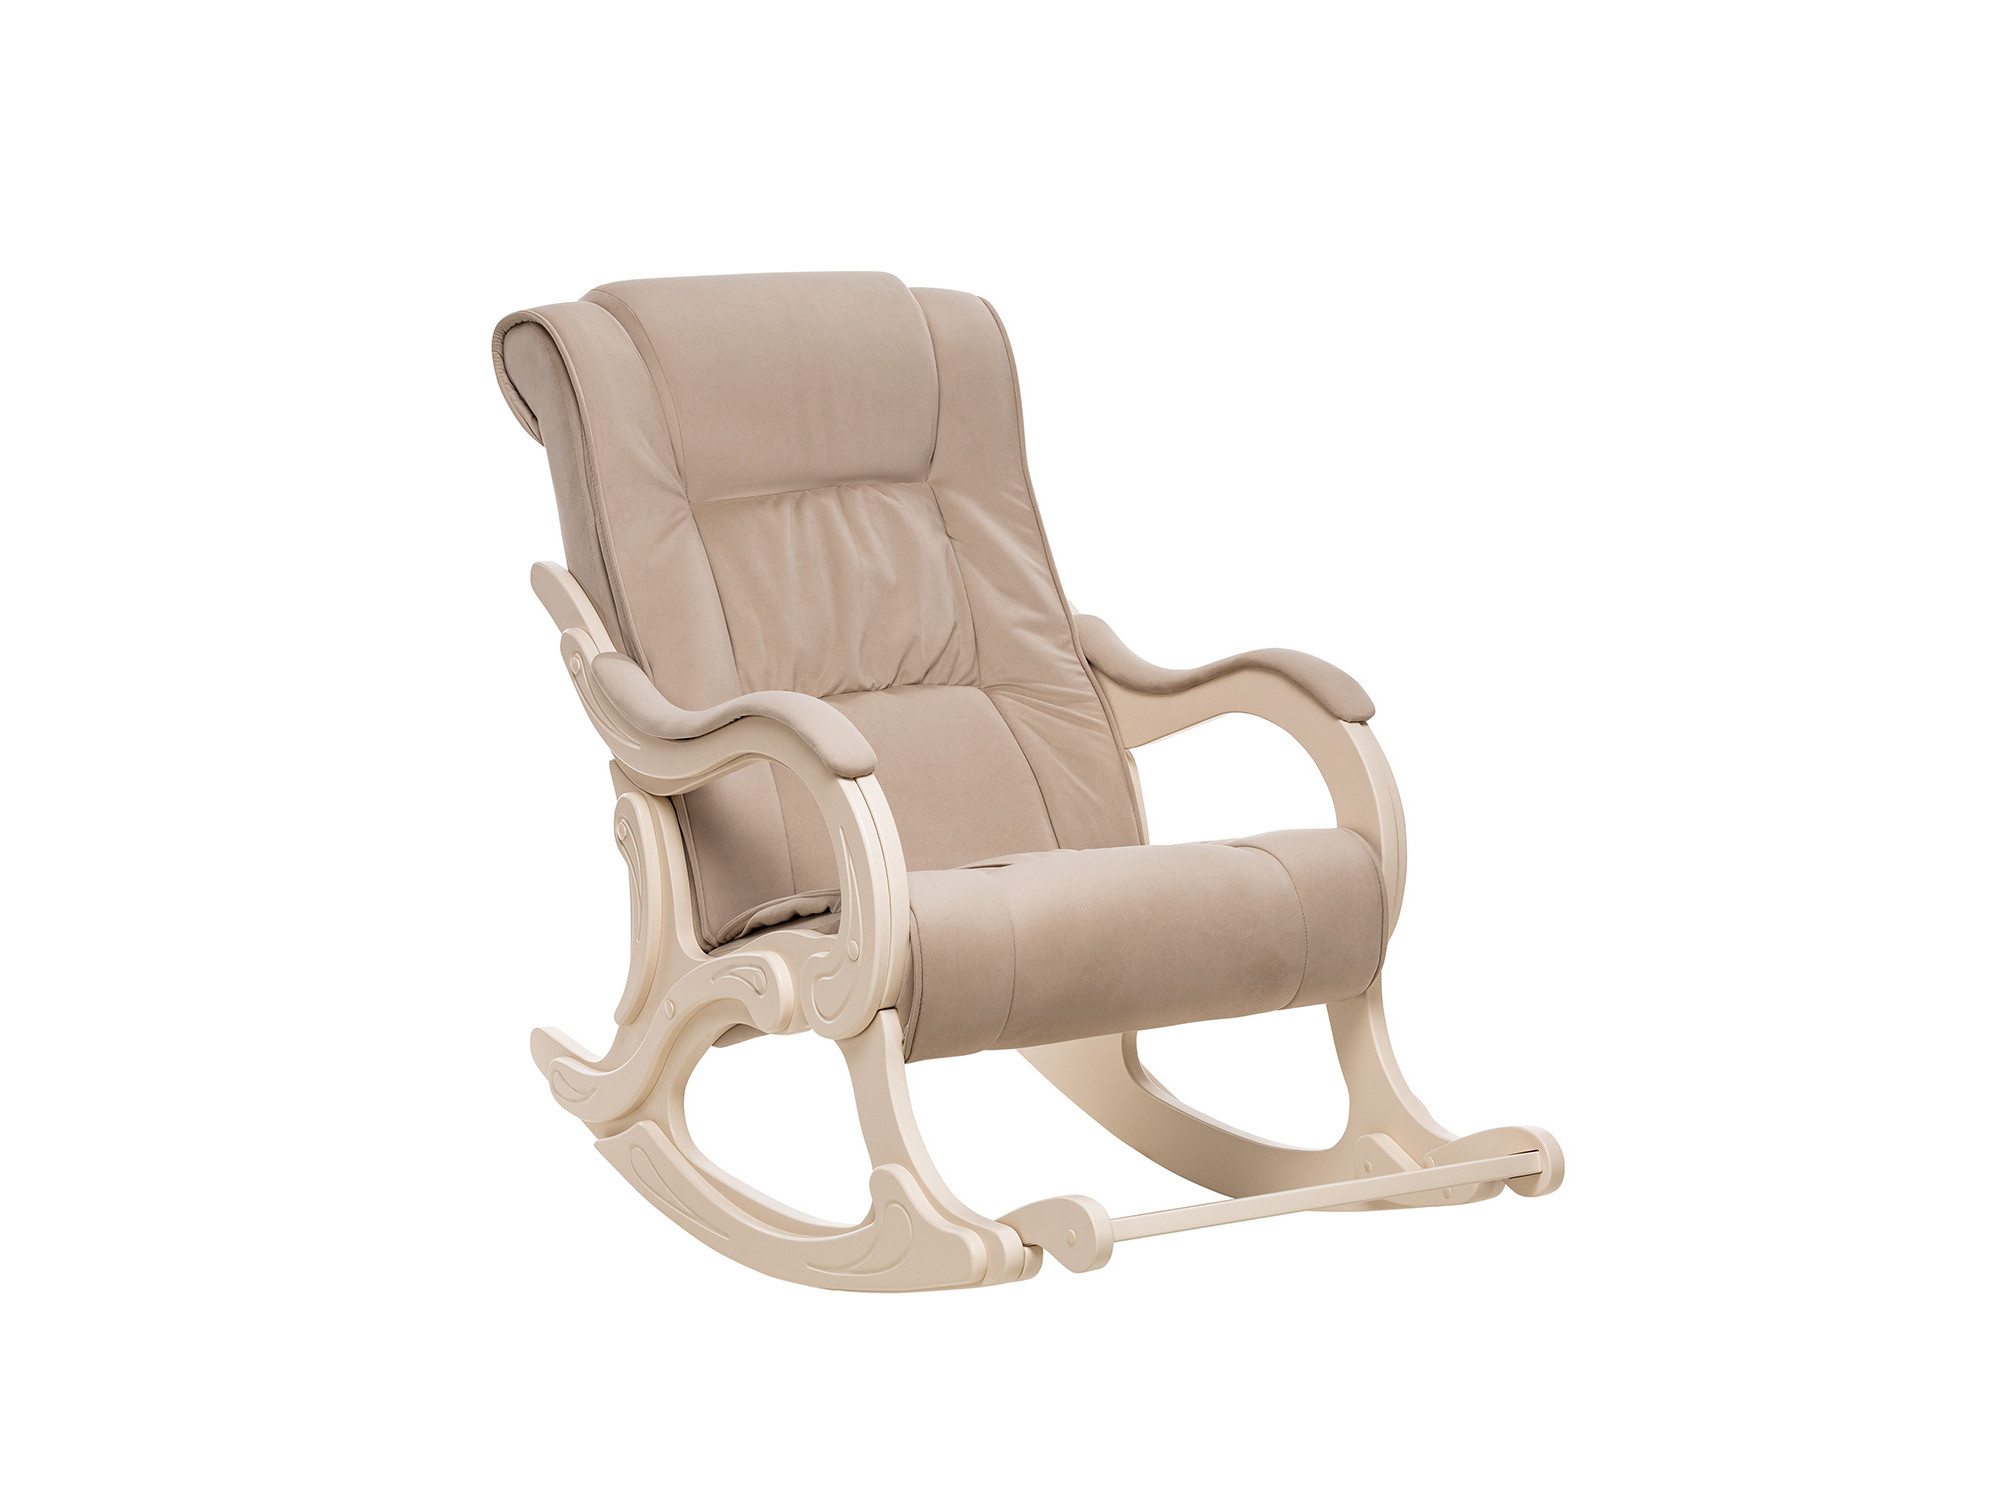 Кресло-качалка Модель 77 MebelVia V18 бежевый, Ткань Велюр, Фанера, шпон, лак кресло качалка модель 77 венге